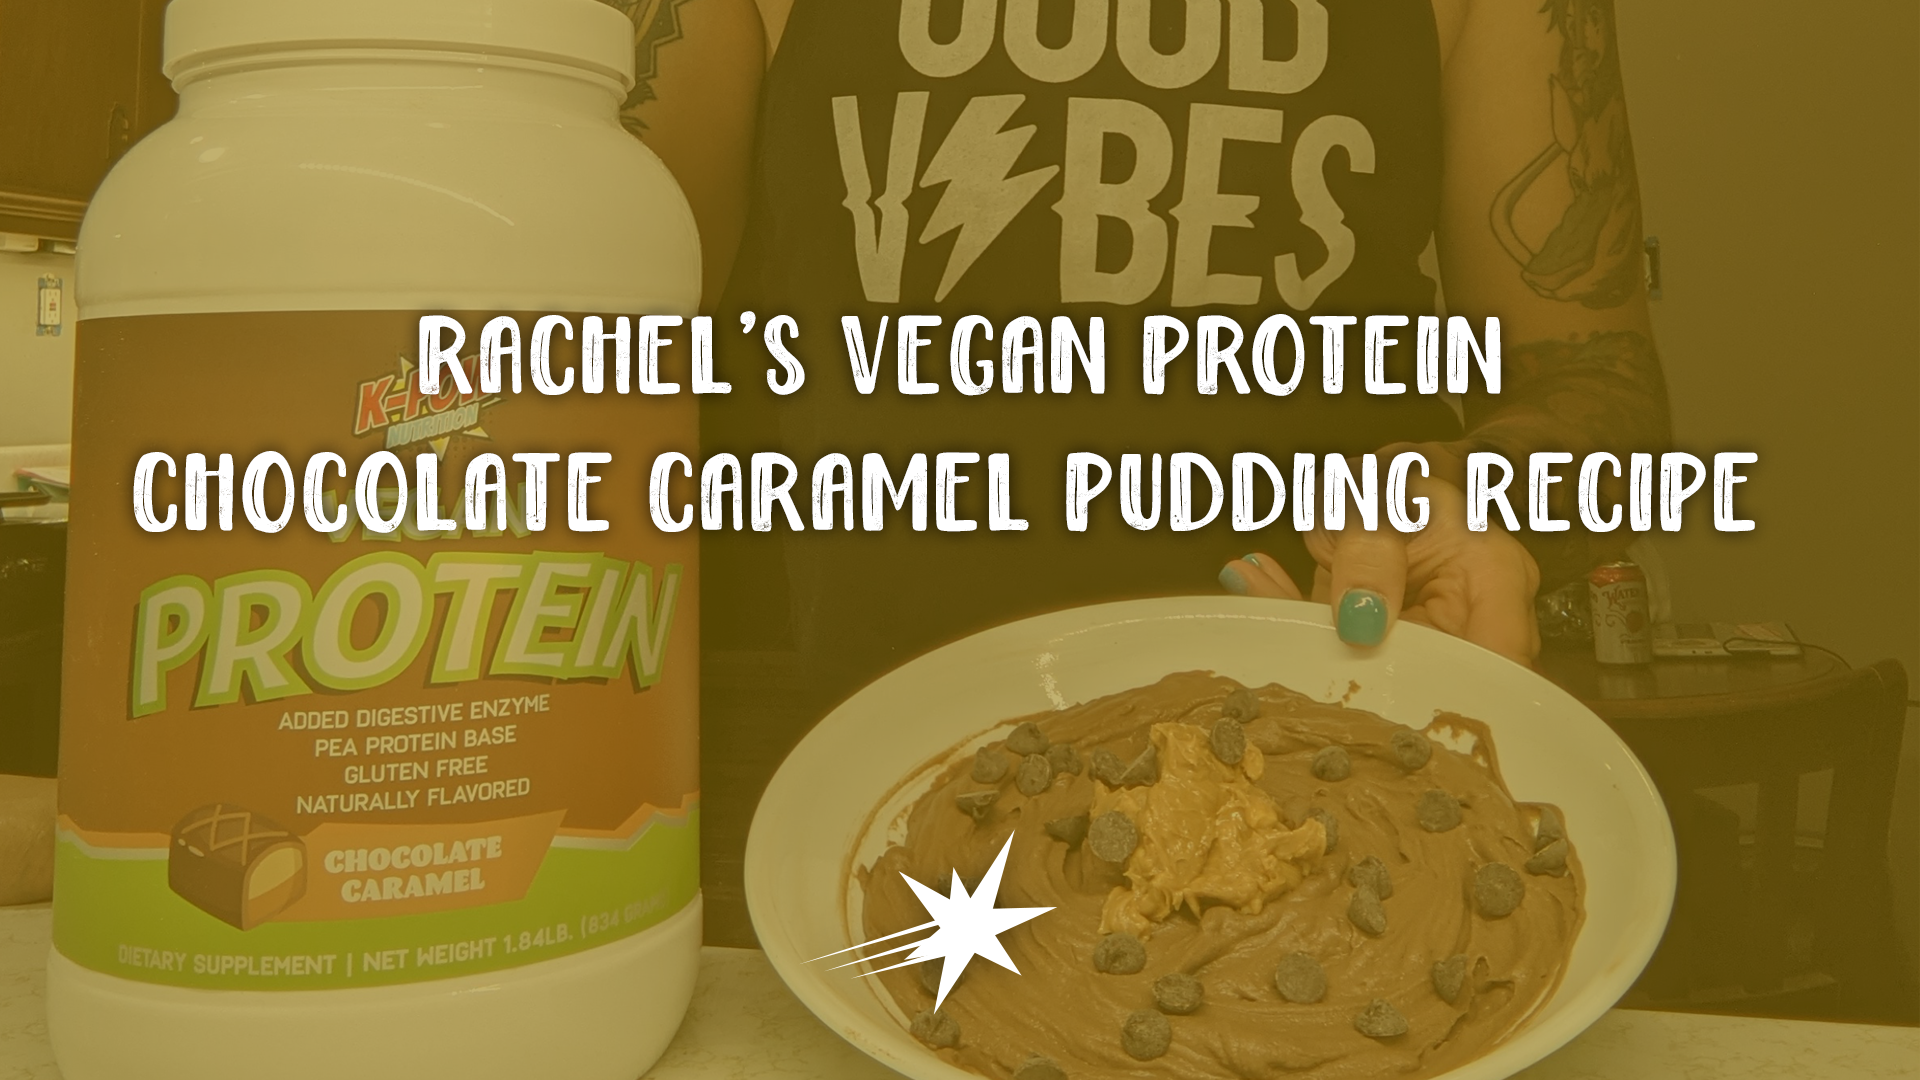 Rachel's Vegan Protein Pudding Recipe